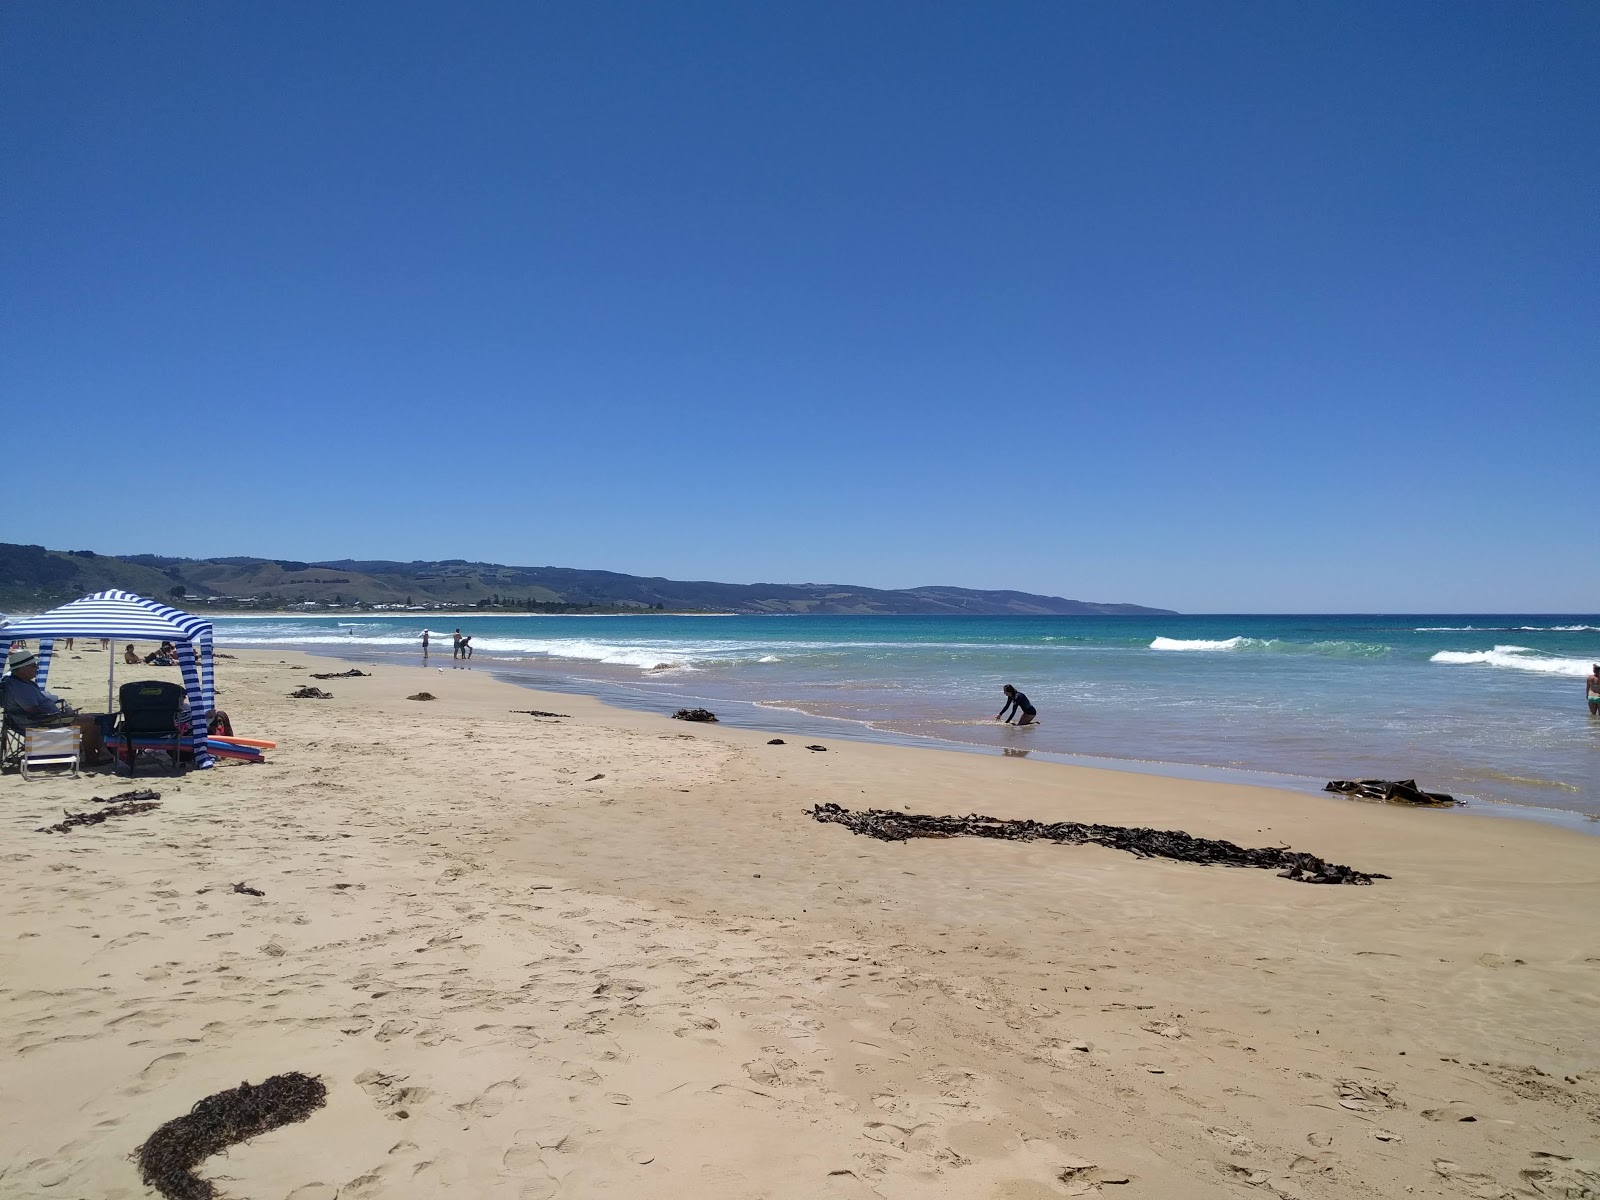 Marengo Beach'in fotoğrafı parlak kum yüzey ile